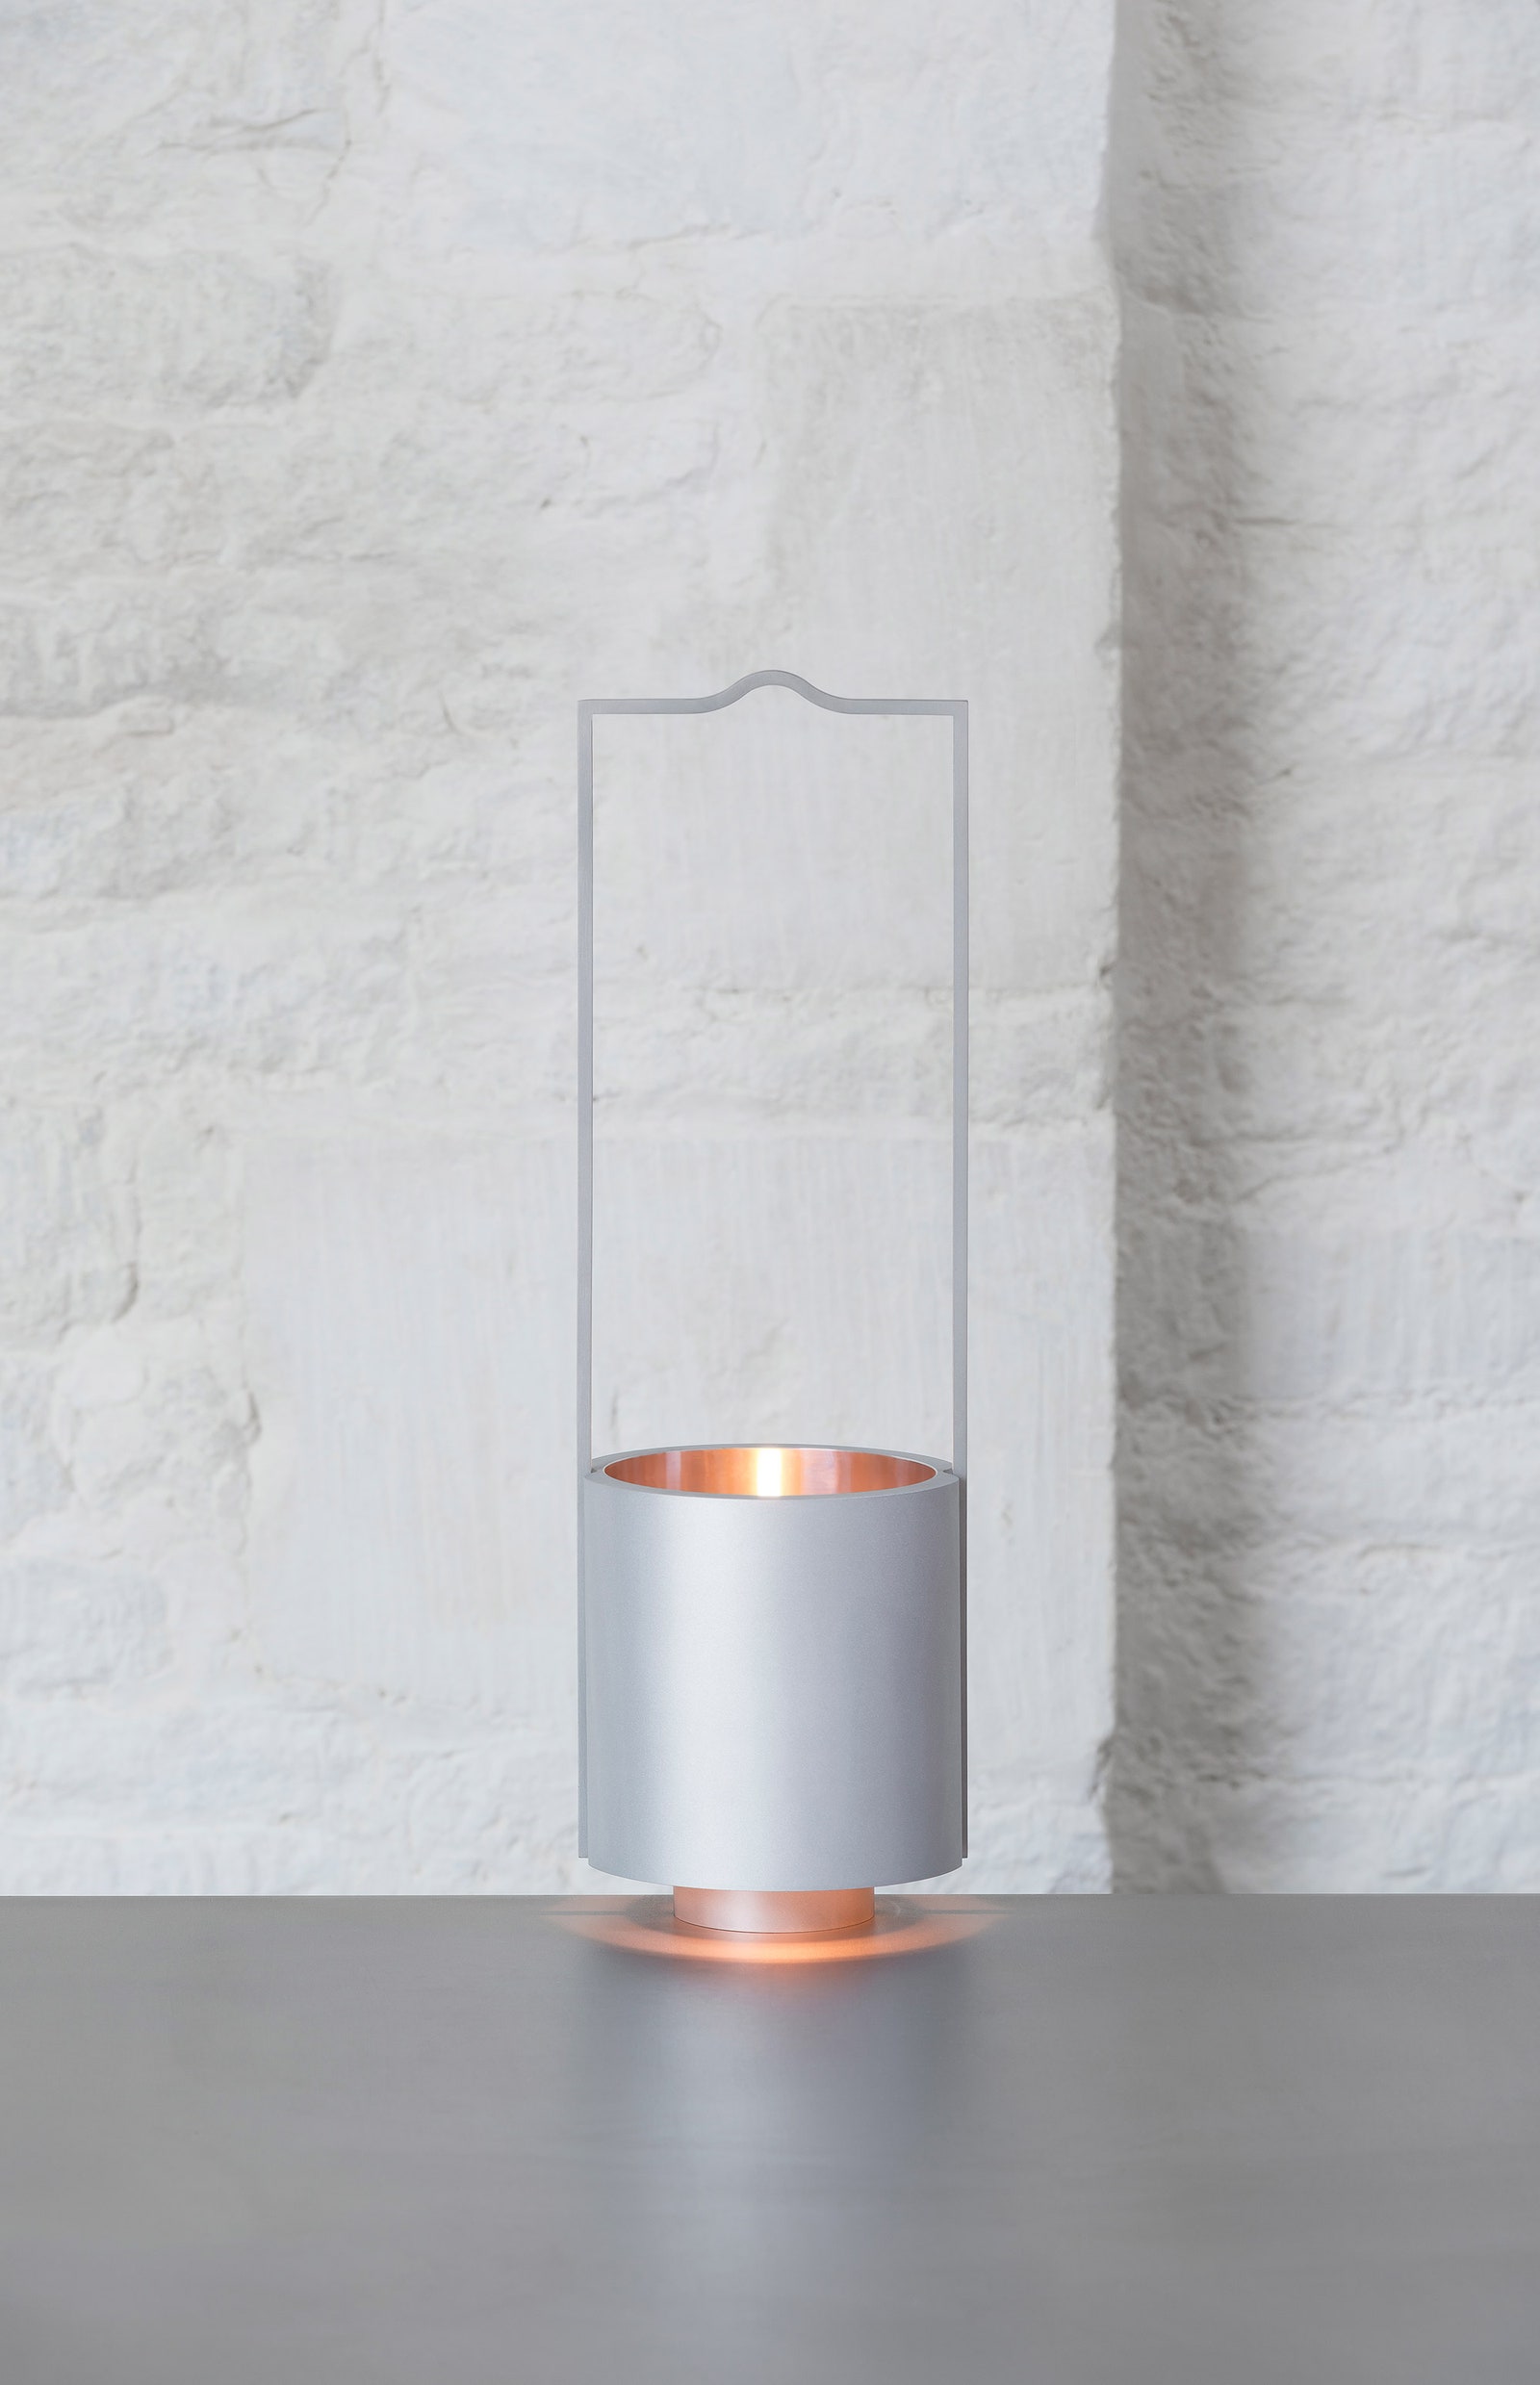 Масляная лампа по дизайну Джона Поусона